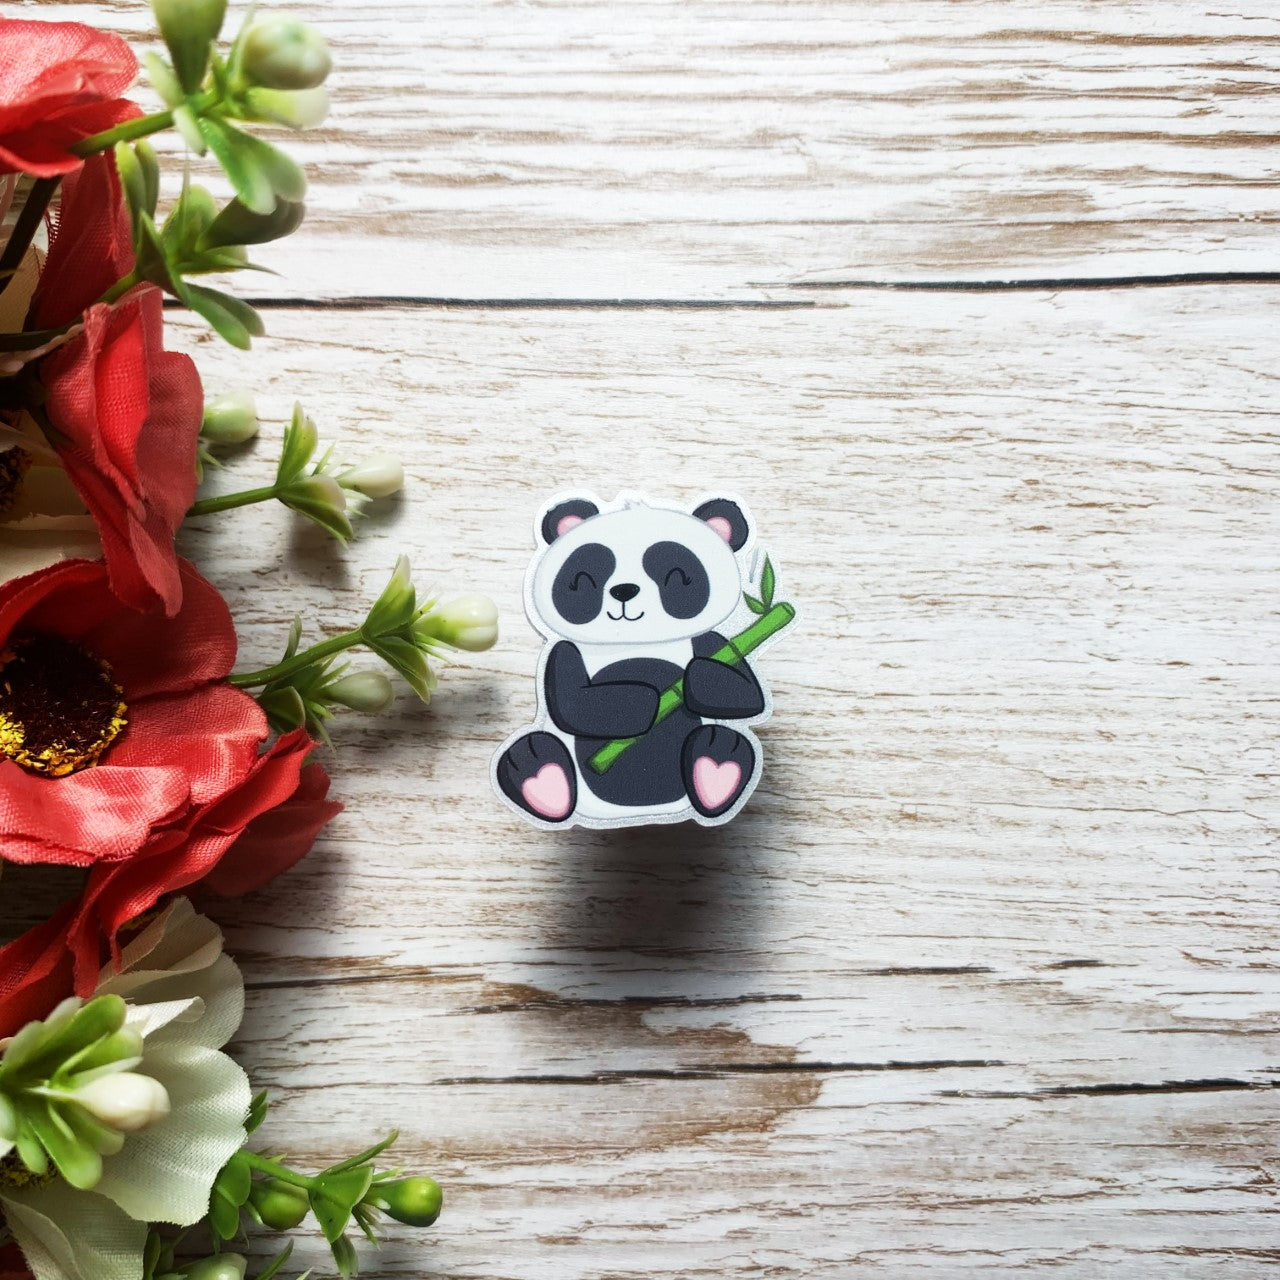 Panda Acrylic Pin